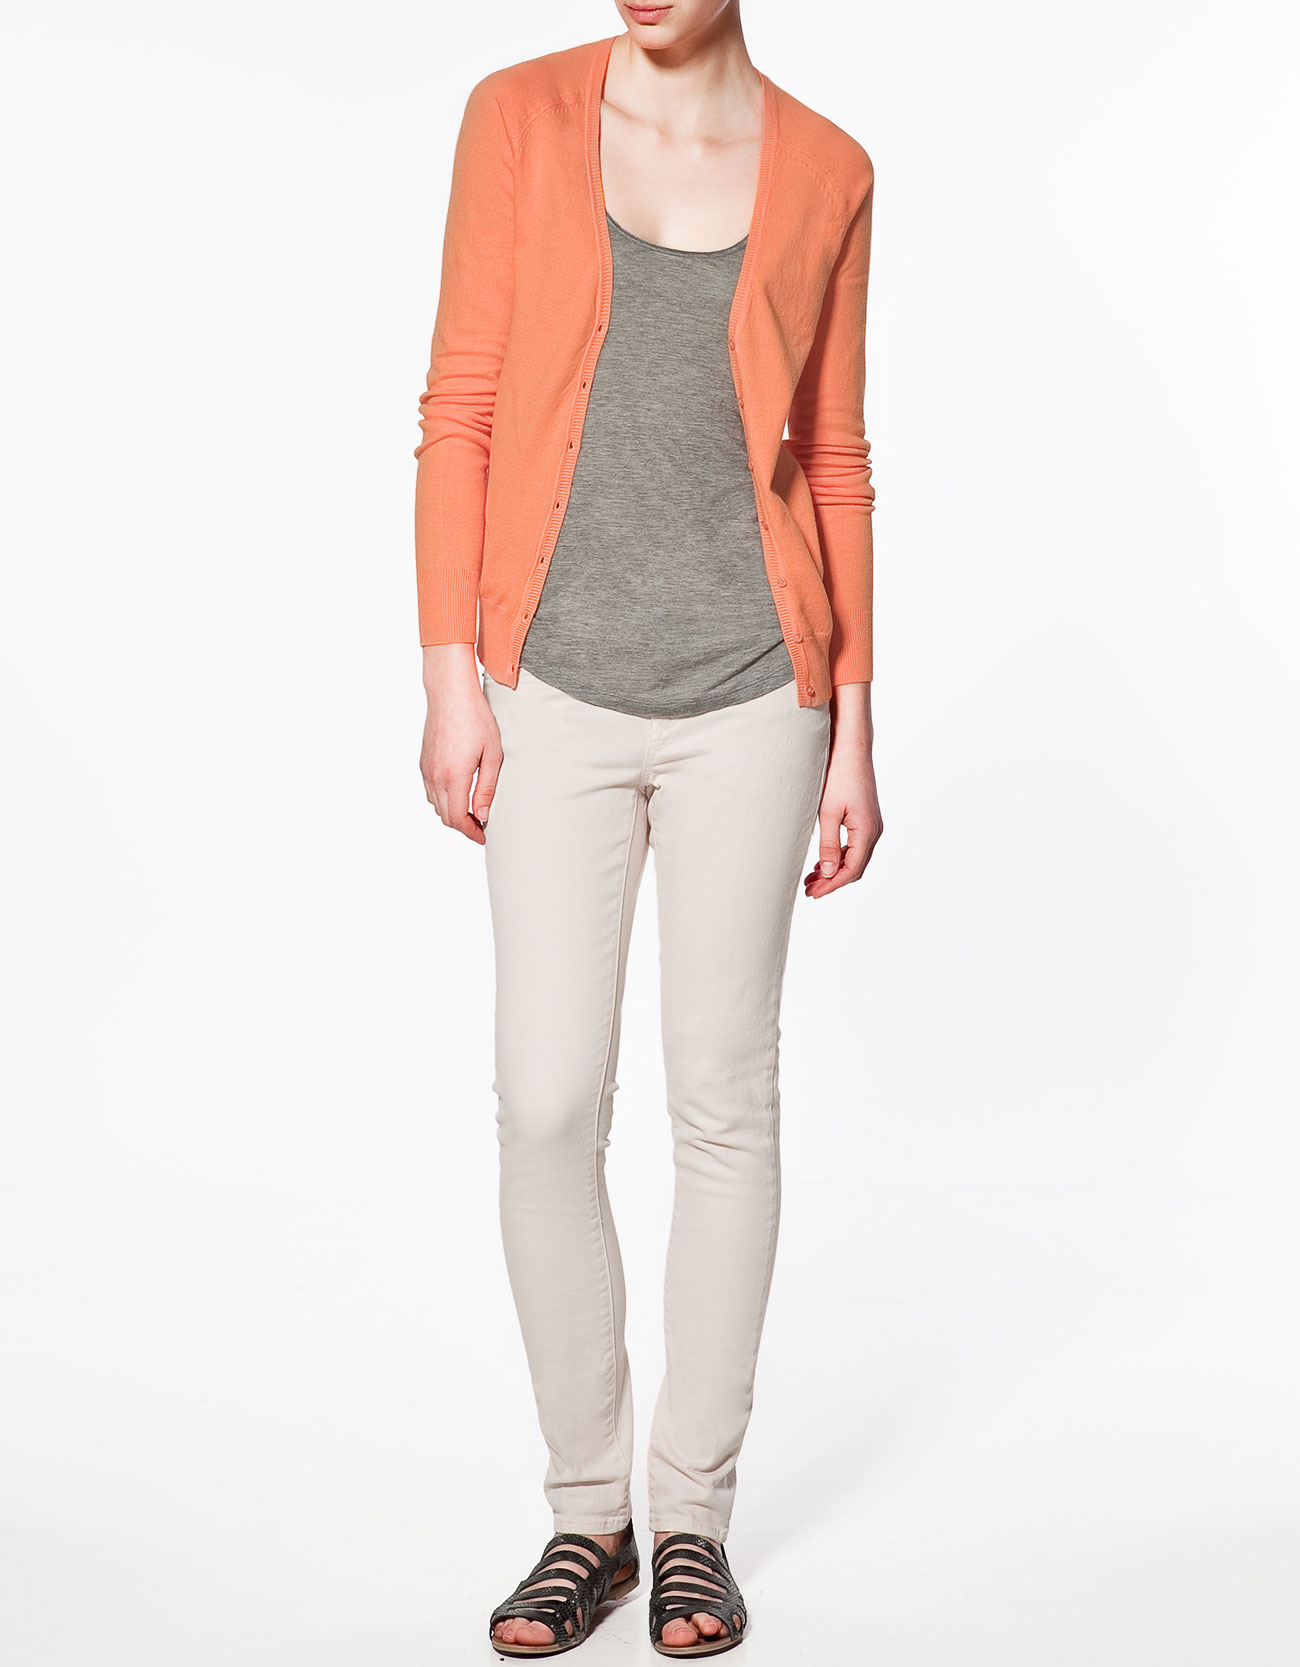  Zara  Basic  Cardigan  in Orange tangerine Lyst